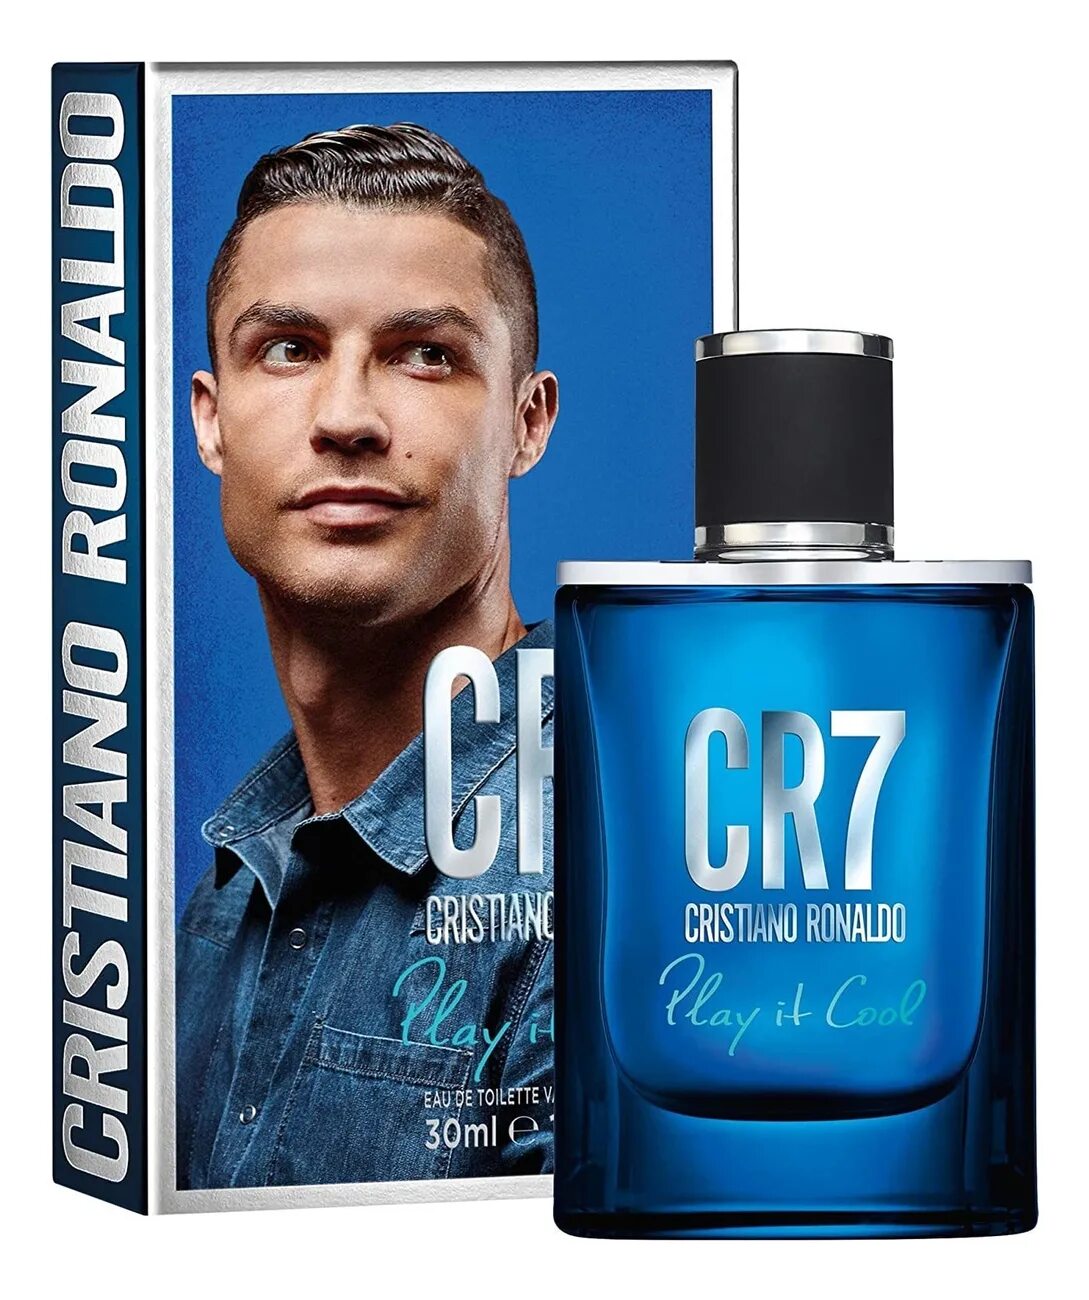 Мужская туалетная вода Кристиано Рональдо. Туалетная вода 7 Роналду. Cr7 духи Play it cool. Мужские духи Cristiano Ronaldo cr7 Origins.